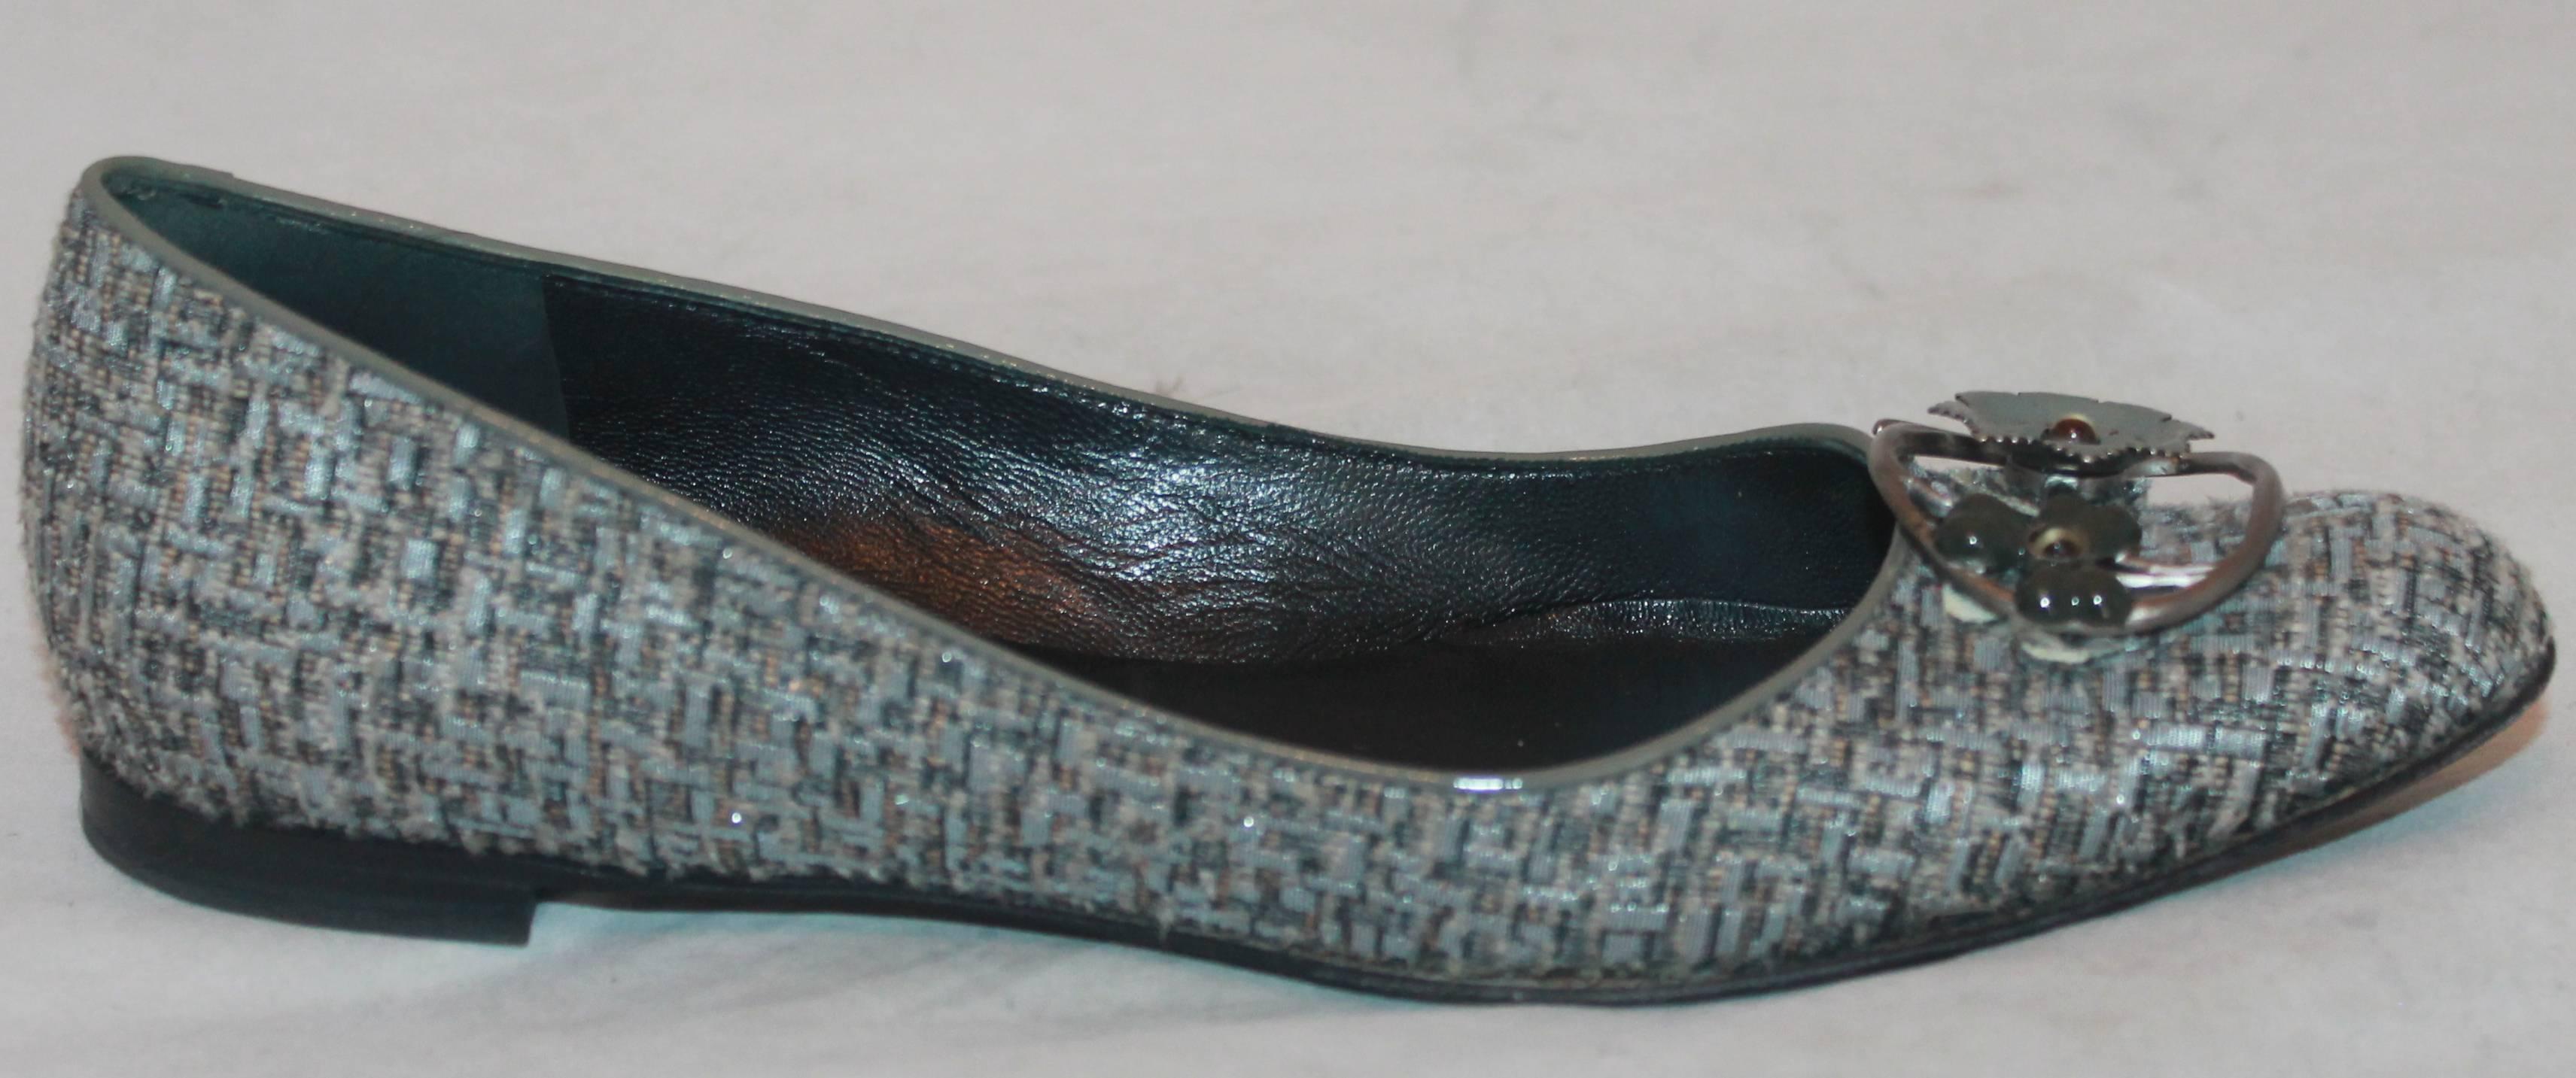 Salvatore Ferragamo Tweed gris avec boucle d'orteil à fleur en métal - 7AA.  Ces jolies chaussures sont en très bon état avec seulement un peu d'usure sur le fond.  Elles présentent une jolie matière tweed grise, une pièce métallique en forme de